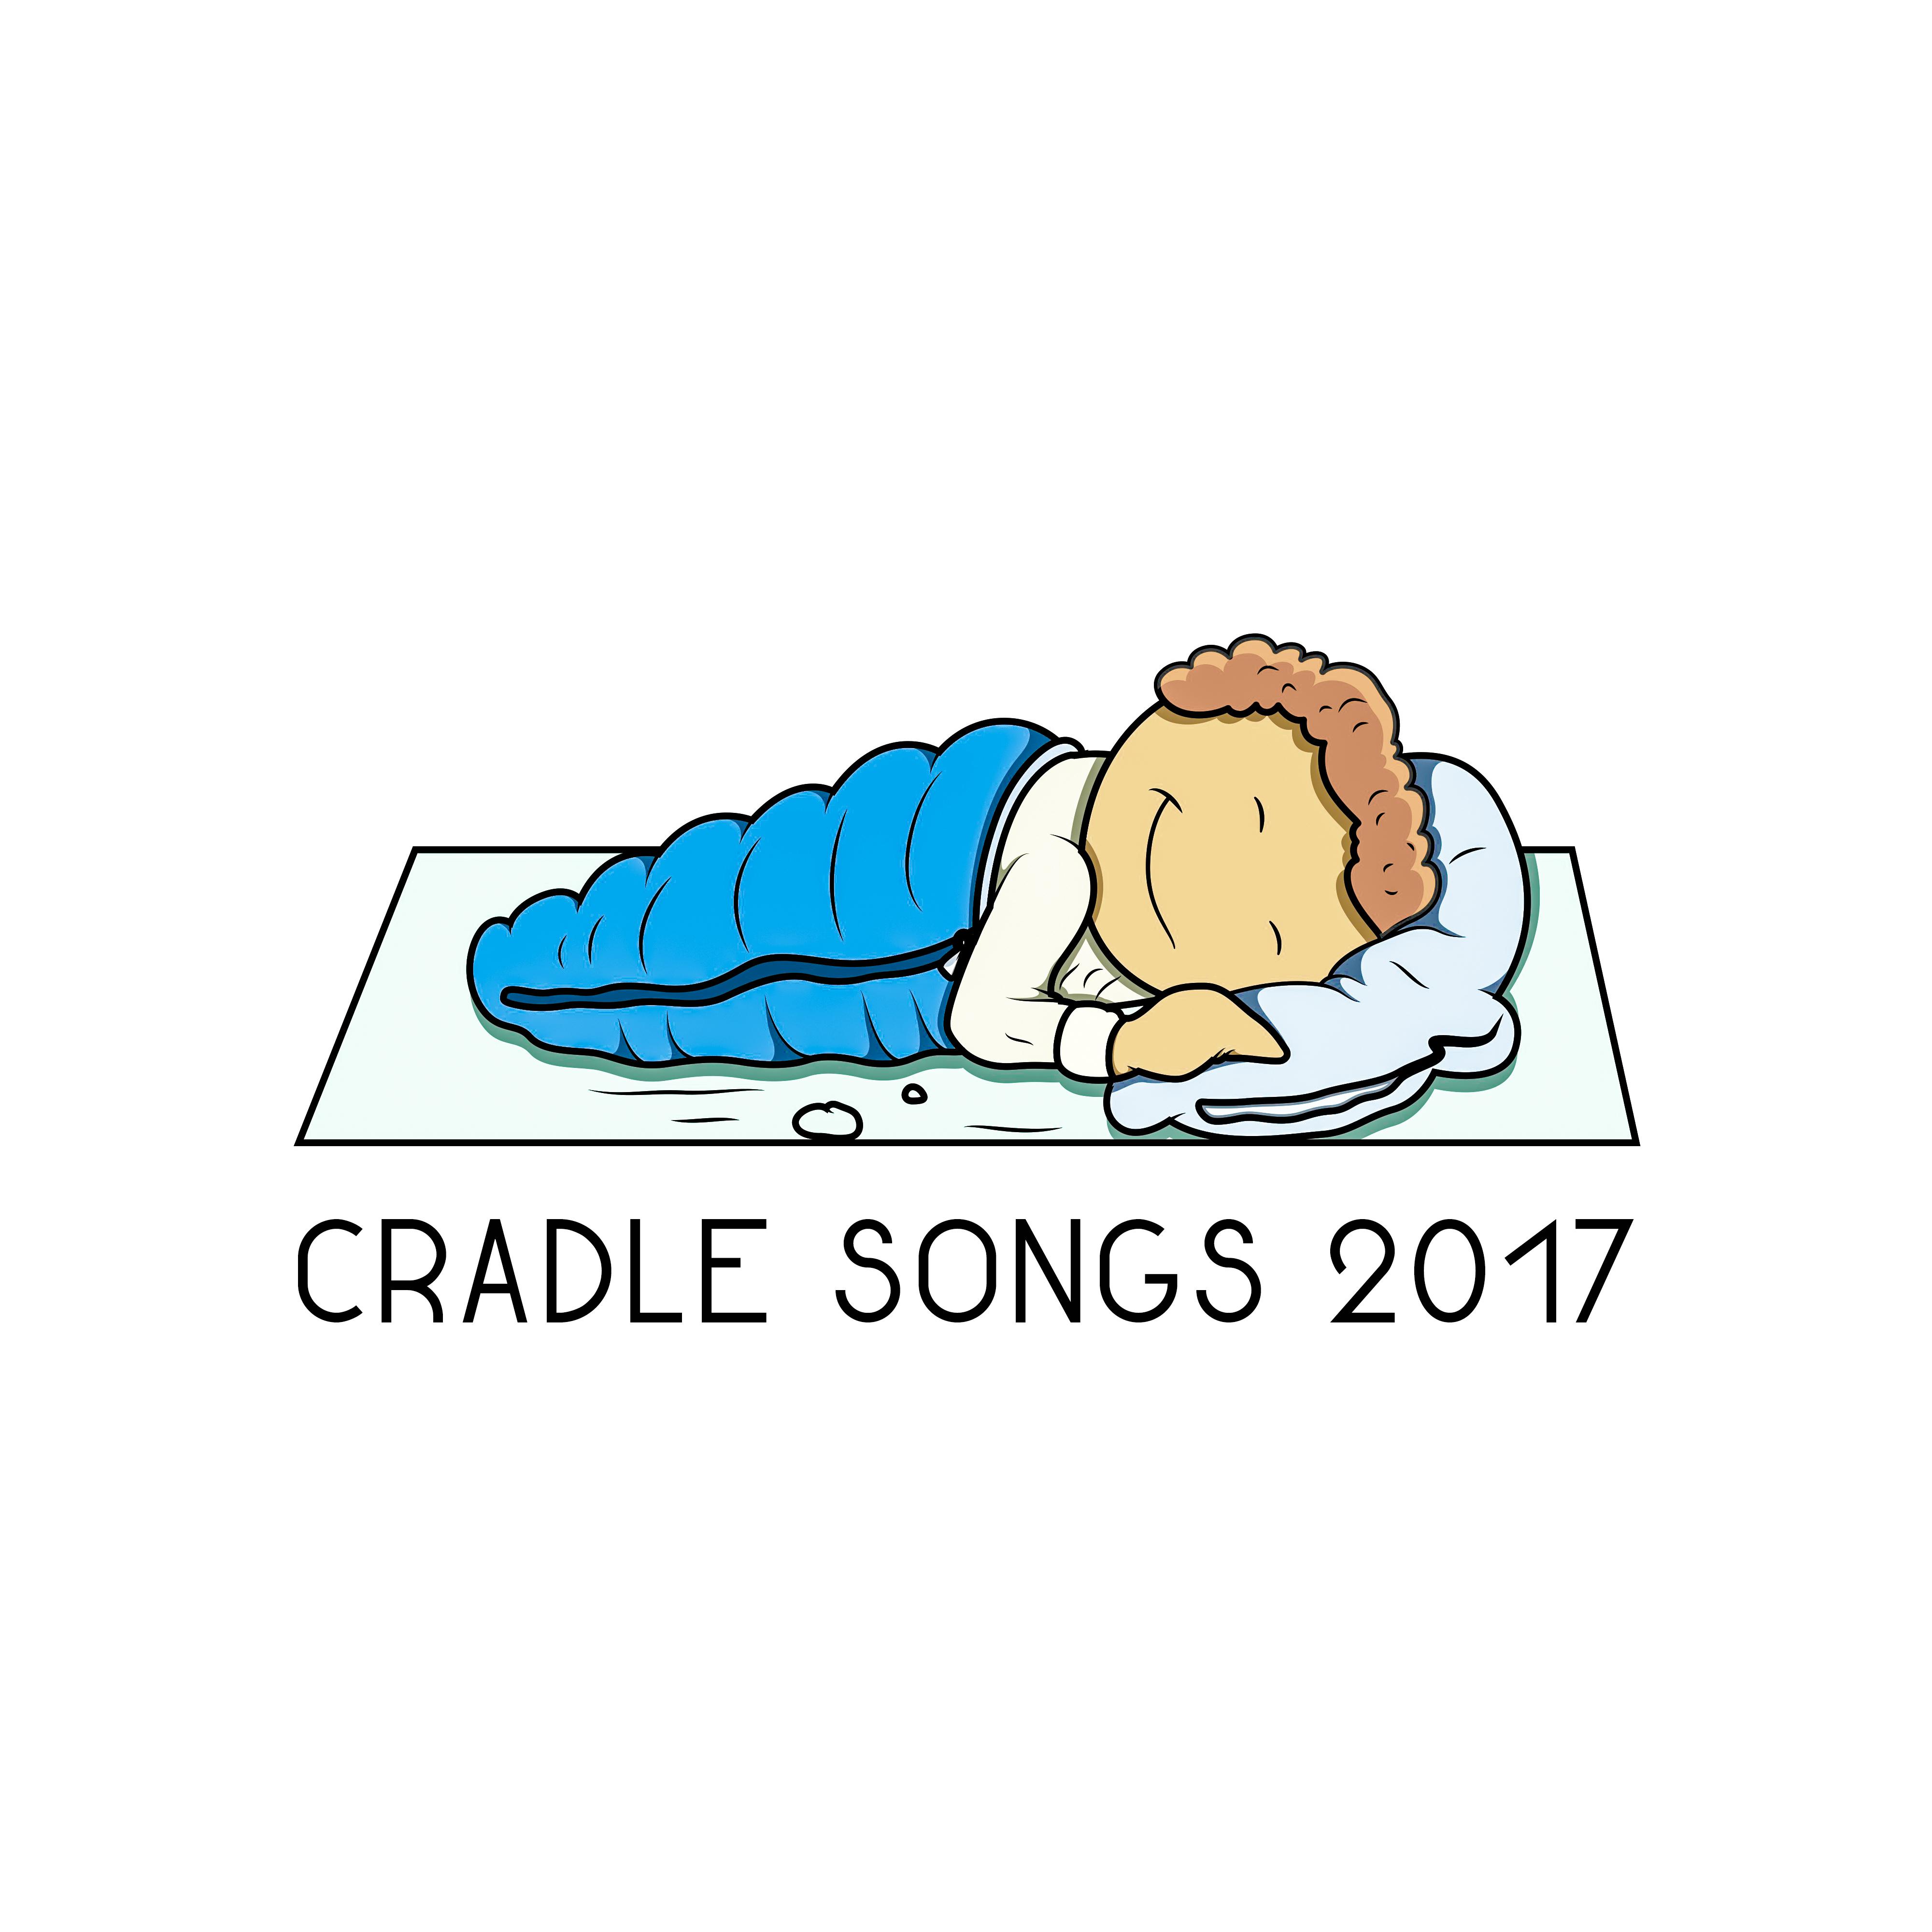 Cradle Songs 2017  Restful Sleep, Inner Peace, Soft Music for Baby, Deep Sleep, Bedtime, Lullabies at Night